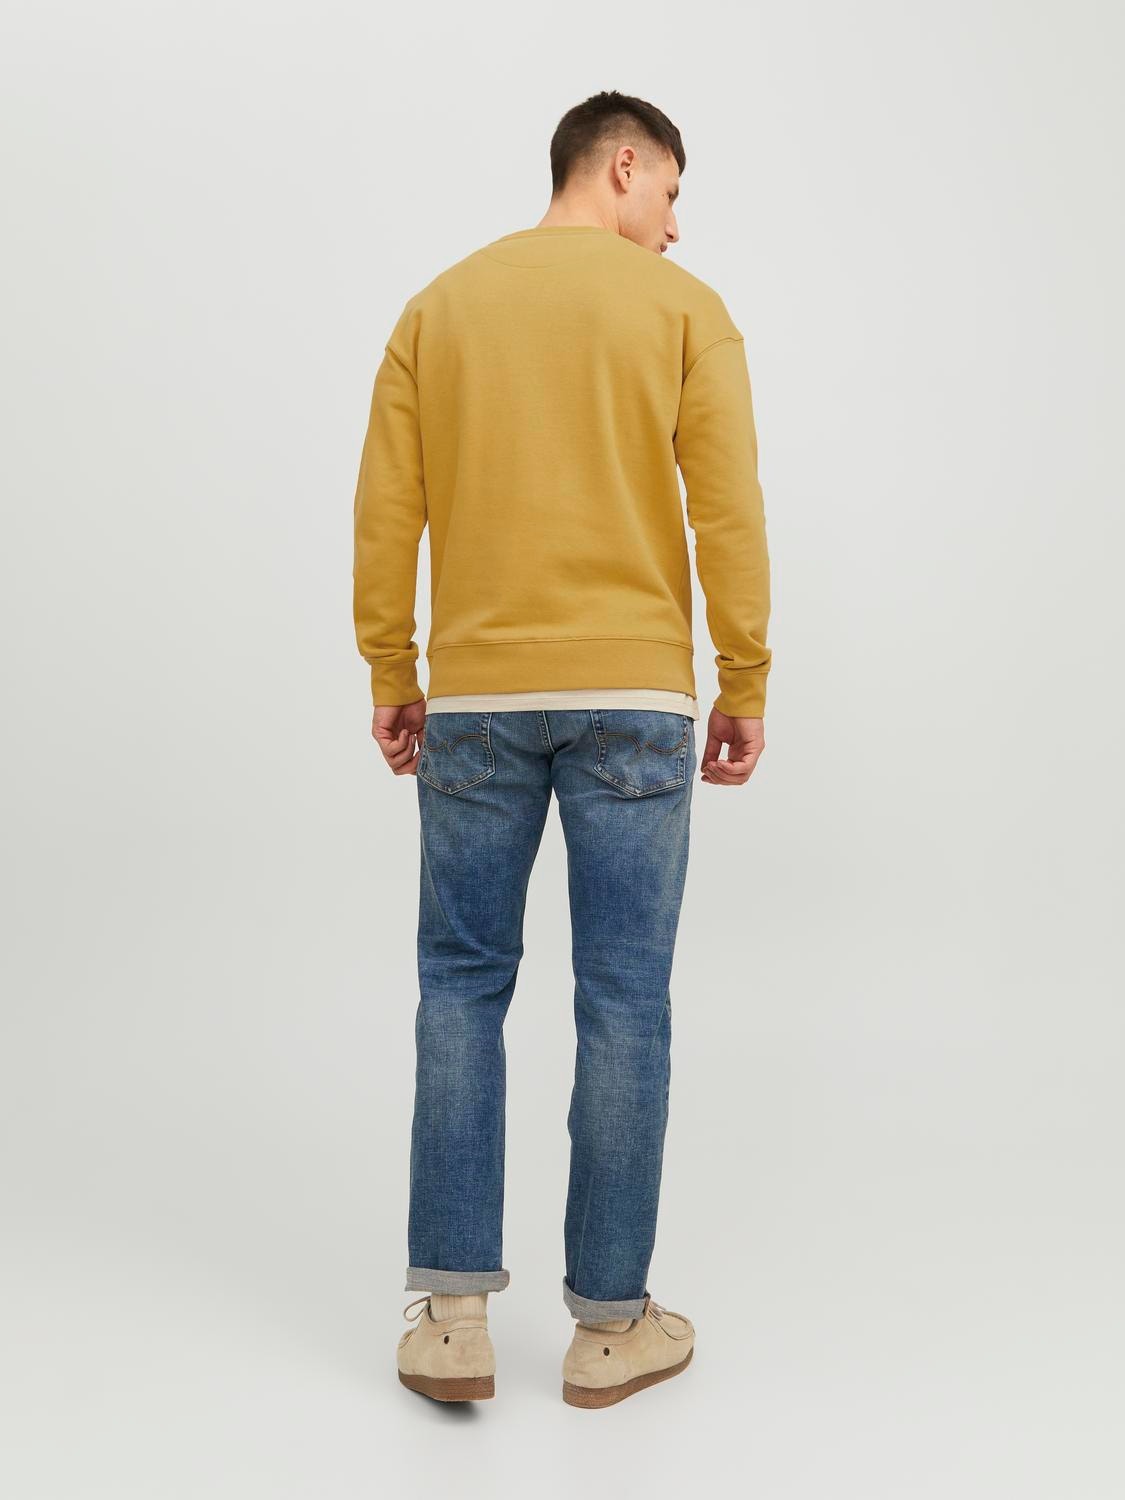 Jack & Jones Plain Crew neck Sweatshirt -Honey Gold - 12208182